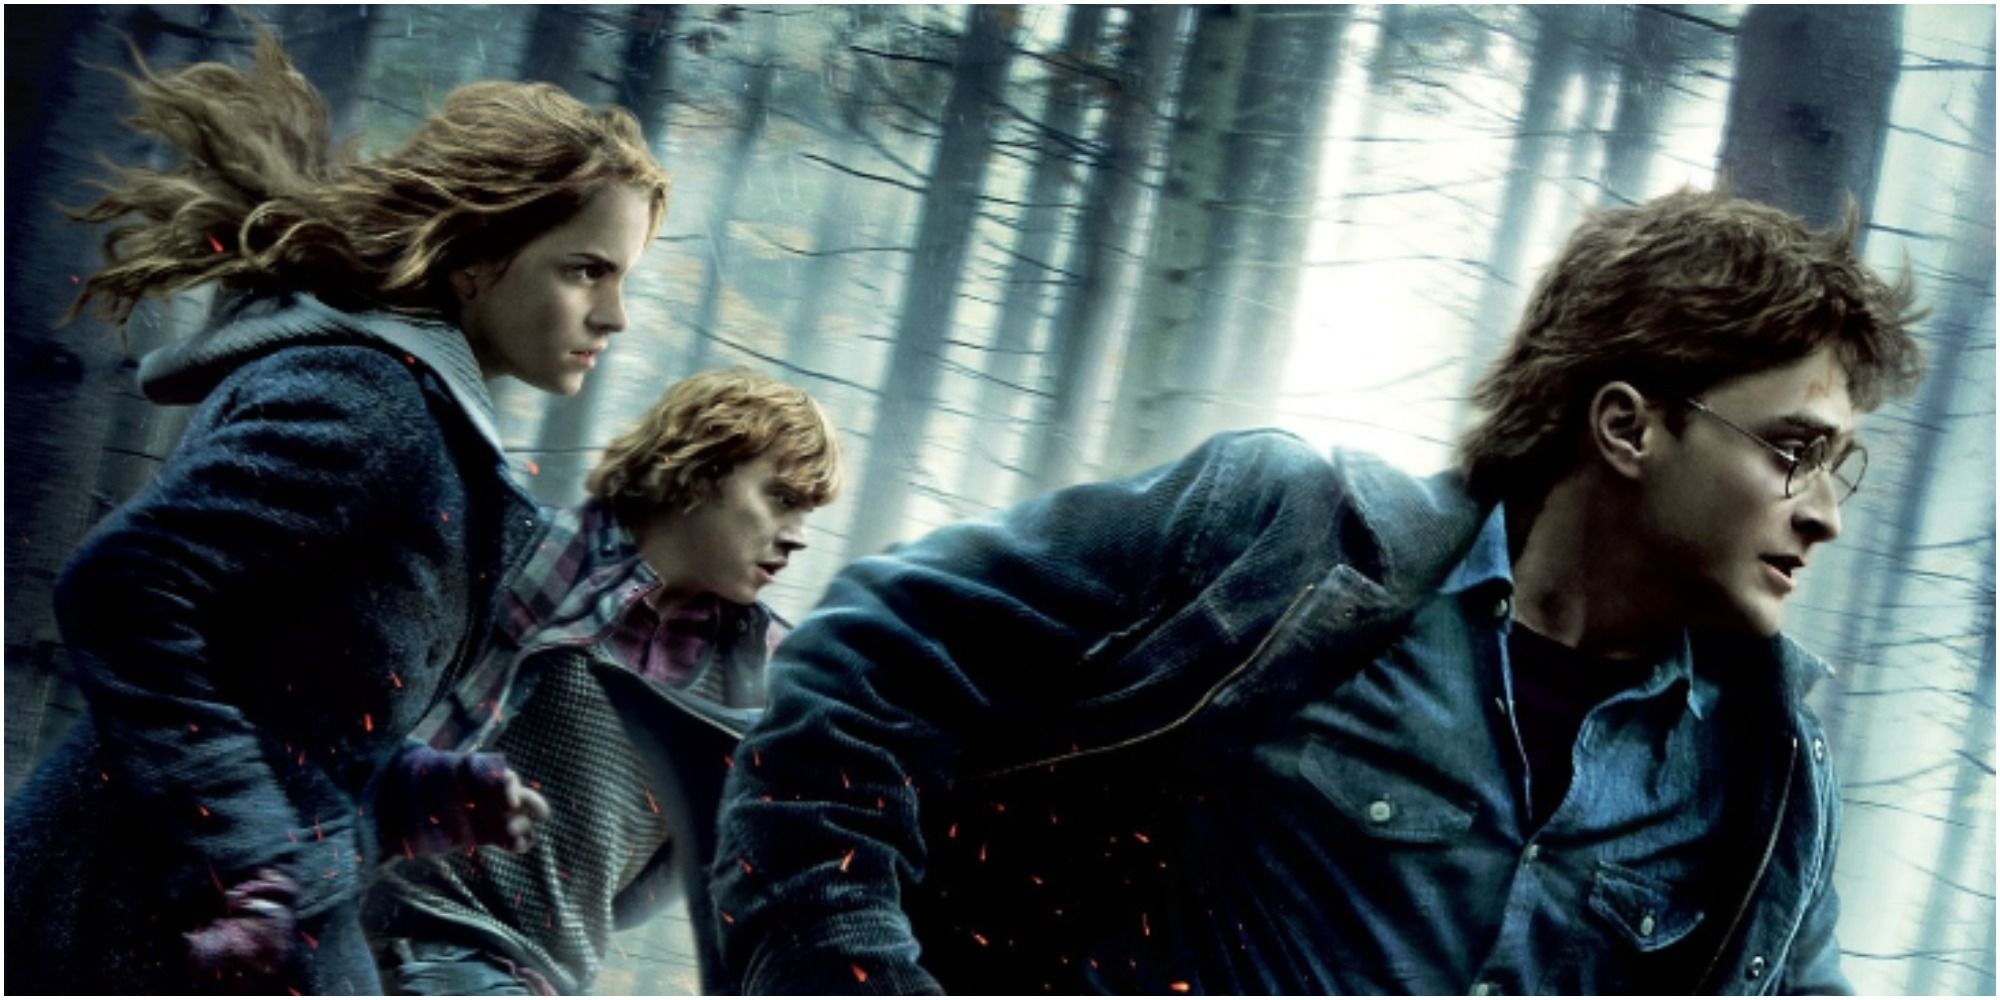 Danielle Radcliffe, Emma Watson et Rupert Grint courant dans les bois dans une affiche promotionnelle pour Harry Potter et les reliques de la mort, partie I